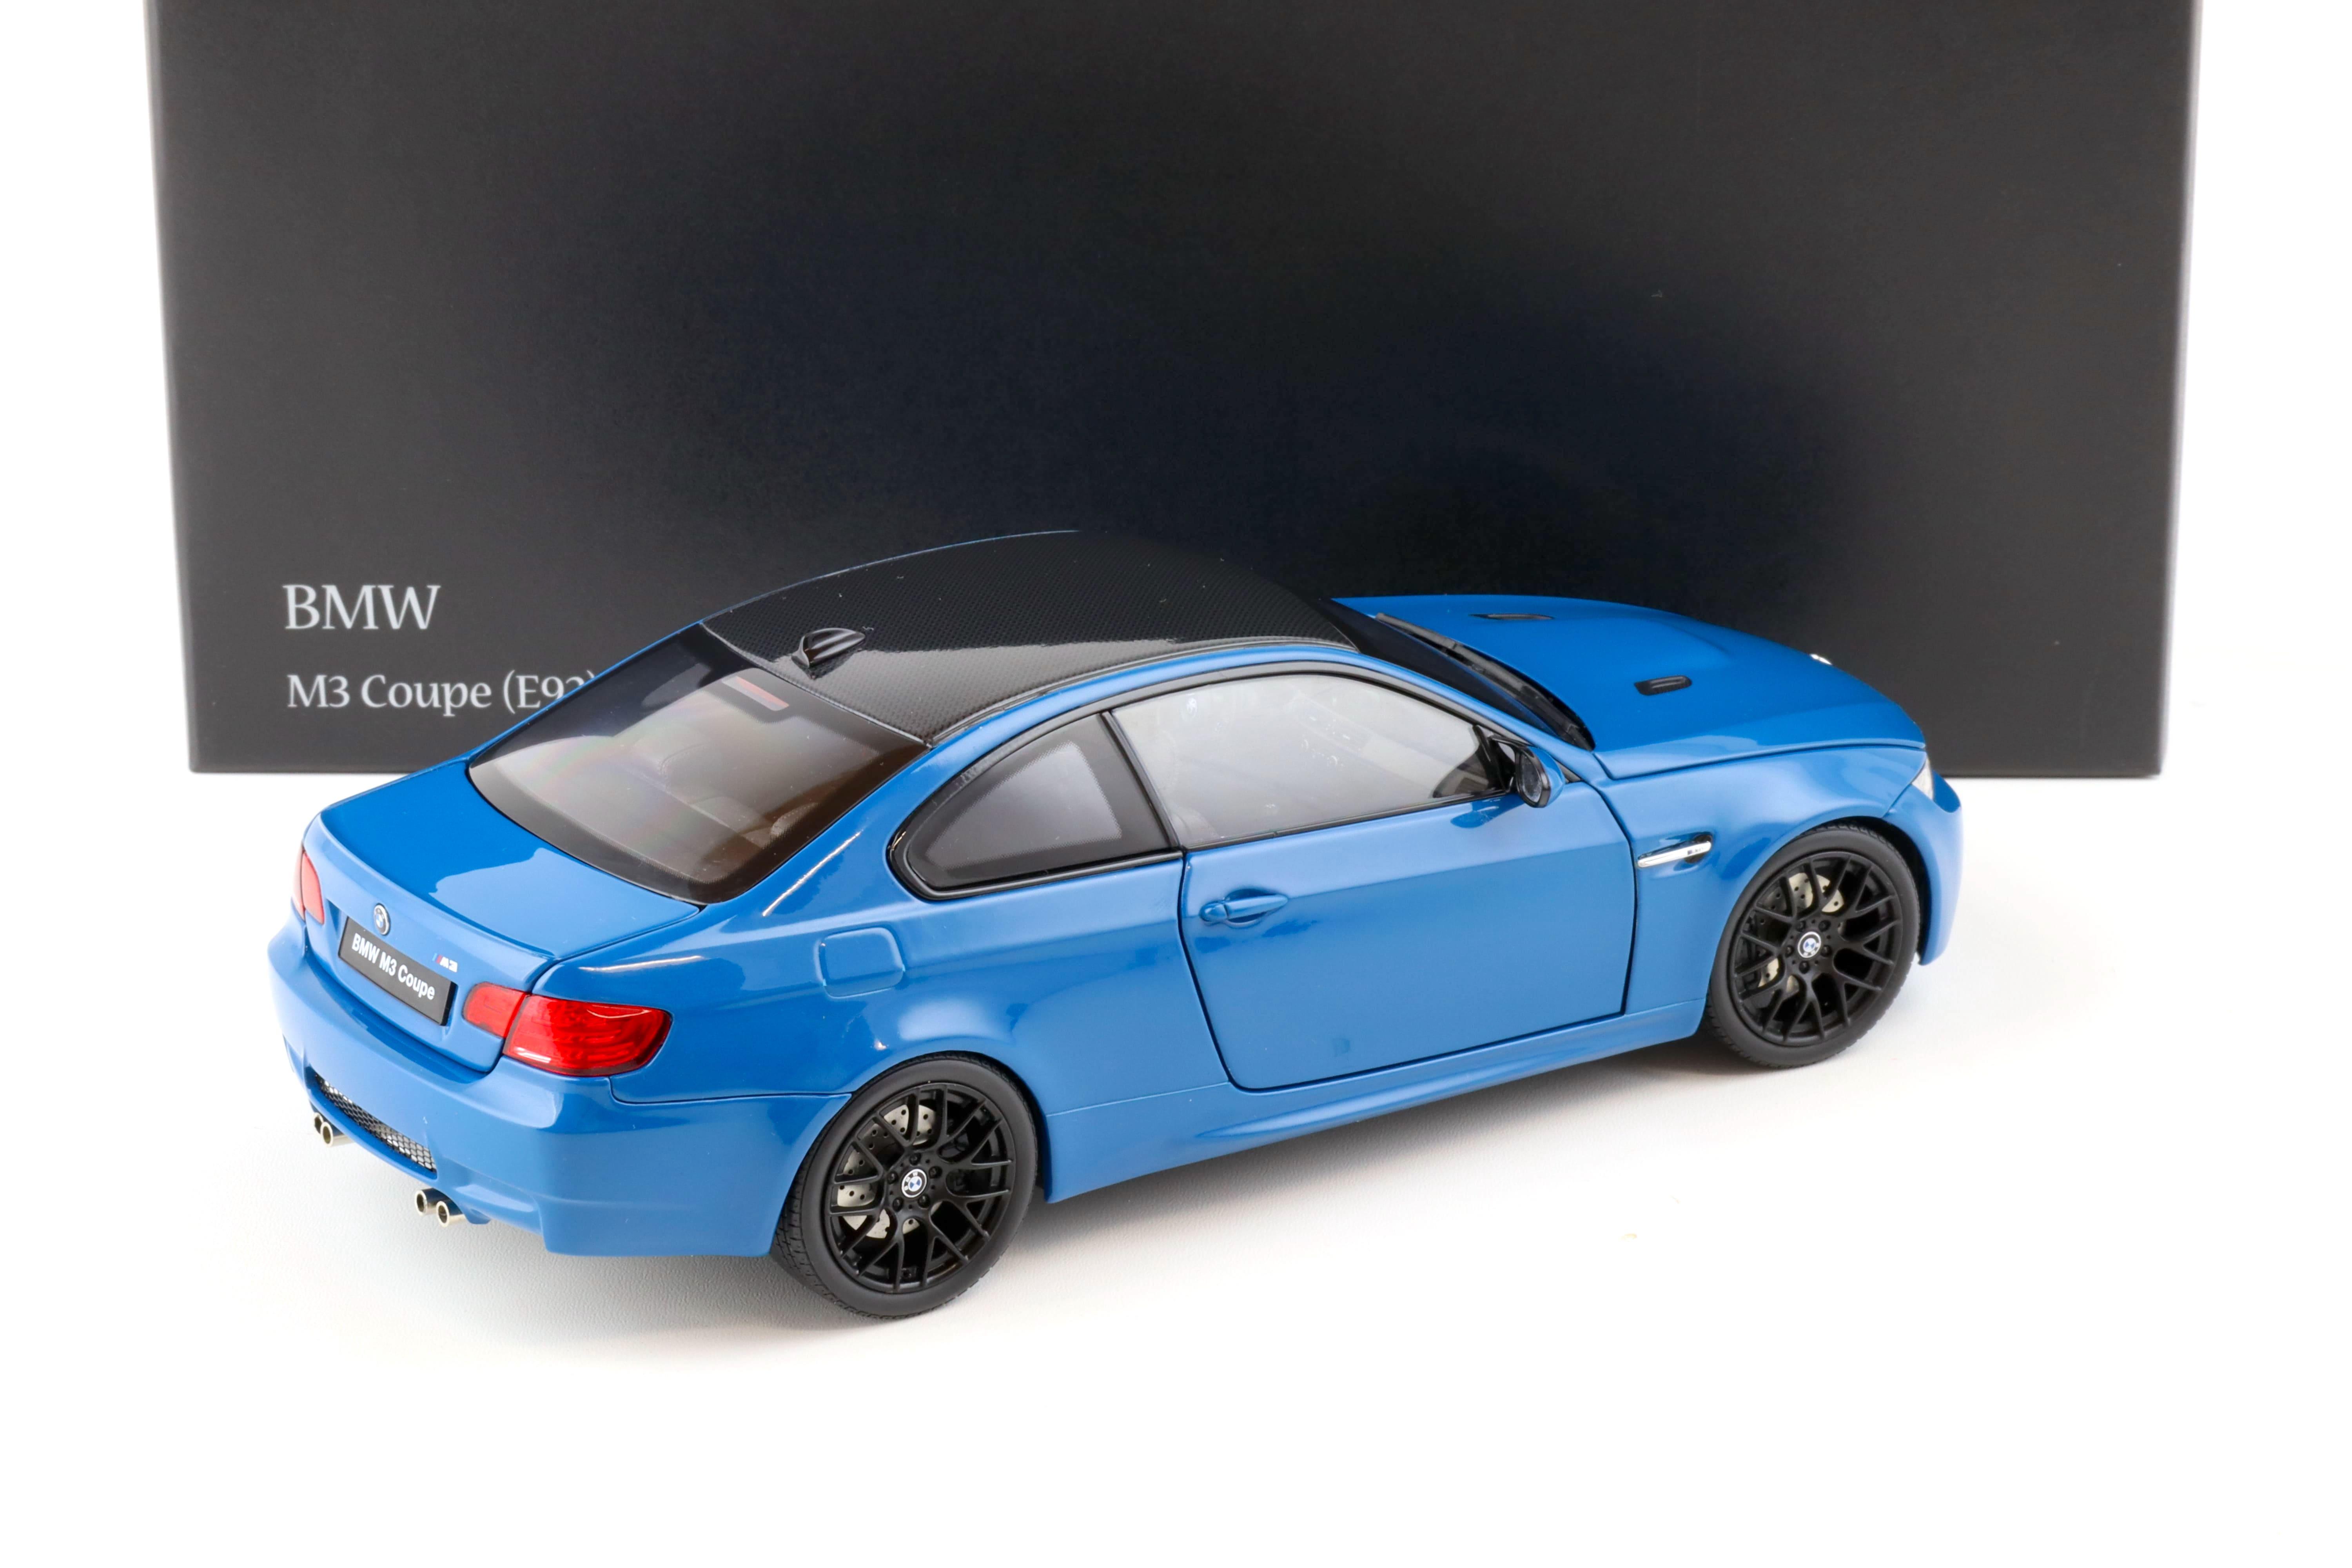 1:18 Kyosho BMW M3 (E92) Coupe Laguna Seca blue 08734LBL